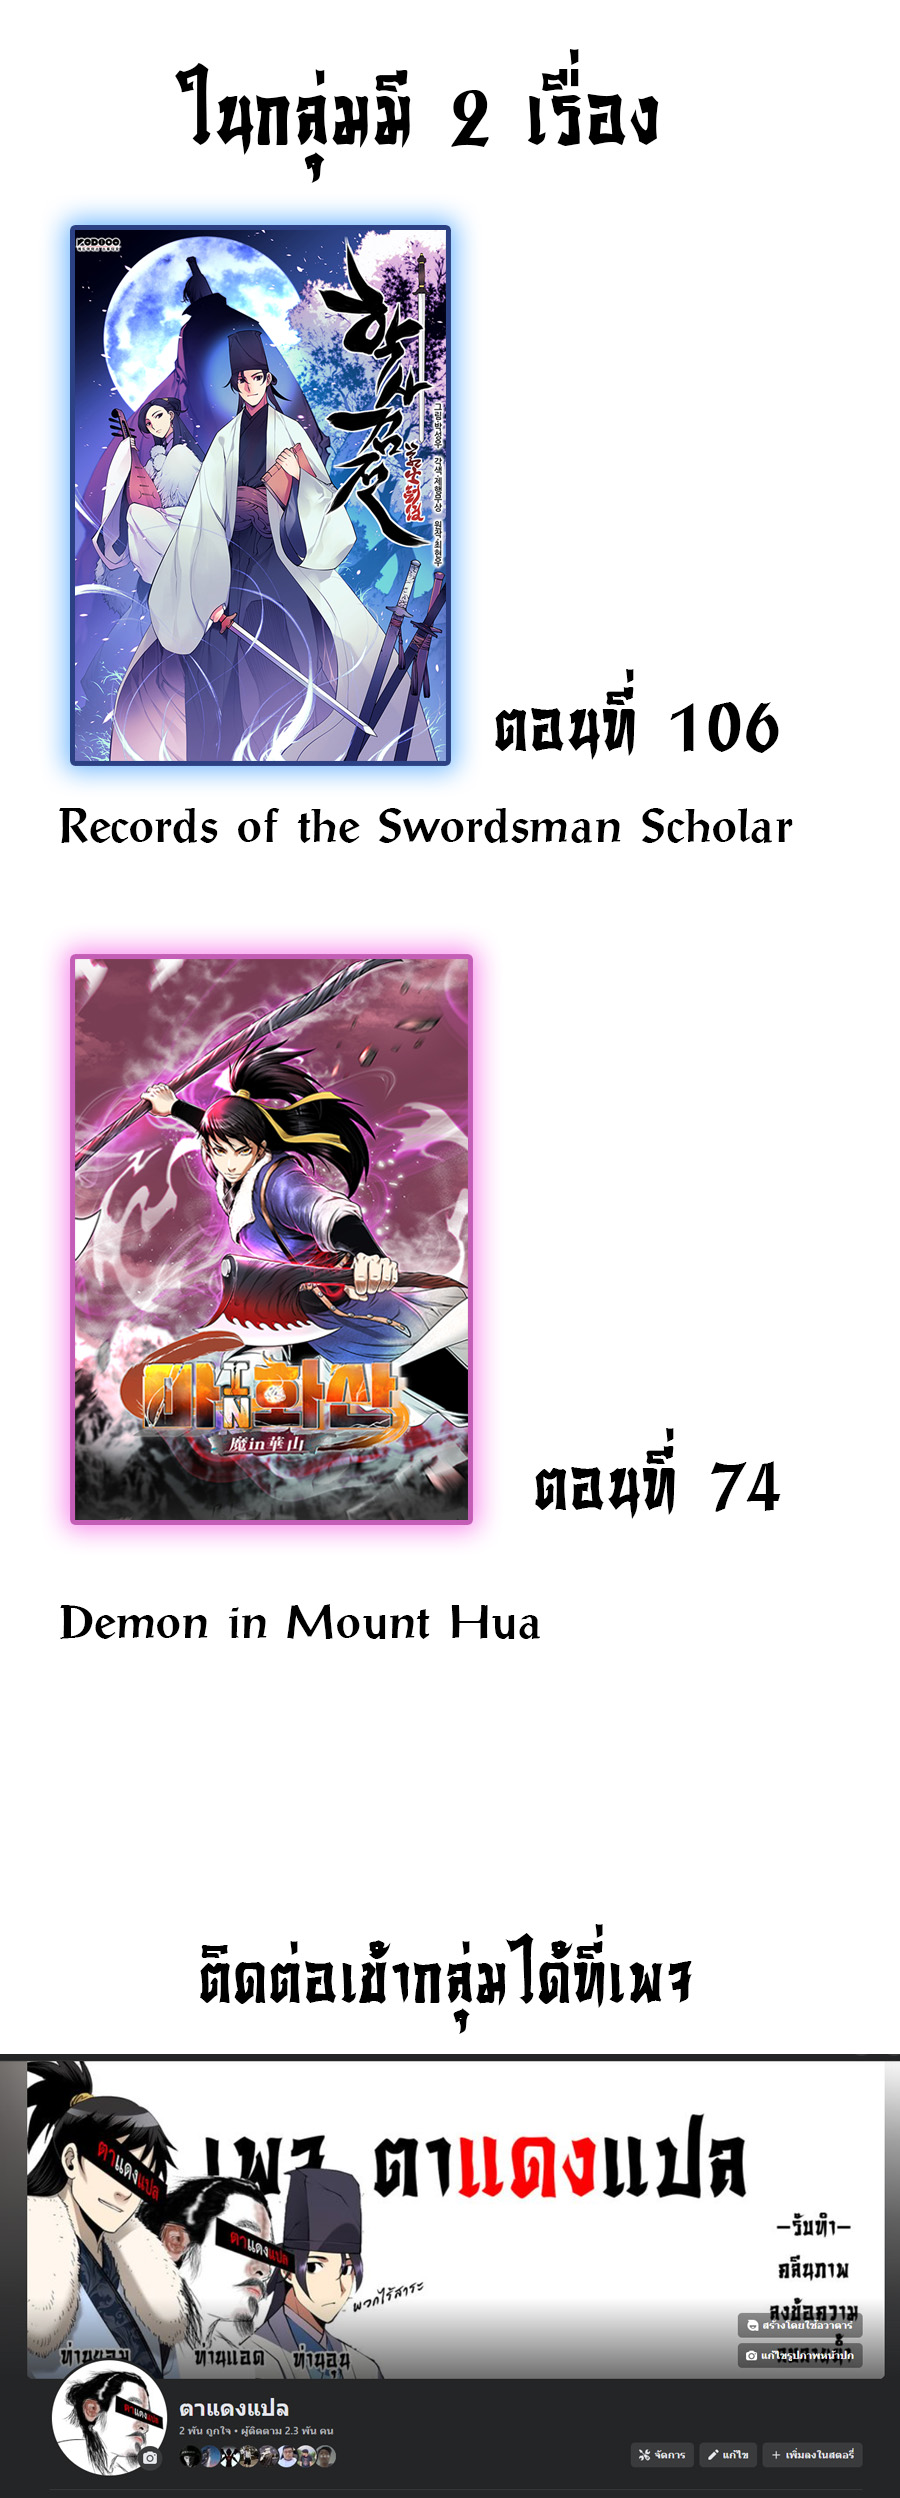 Demon in mount hua 46 (11)